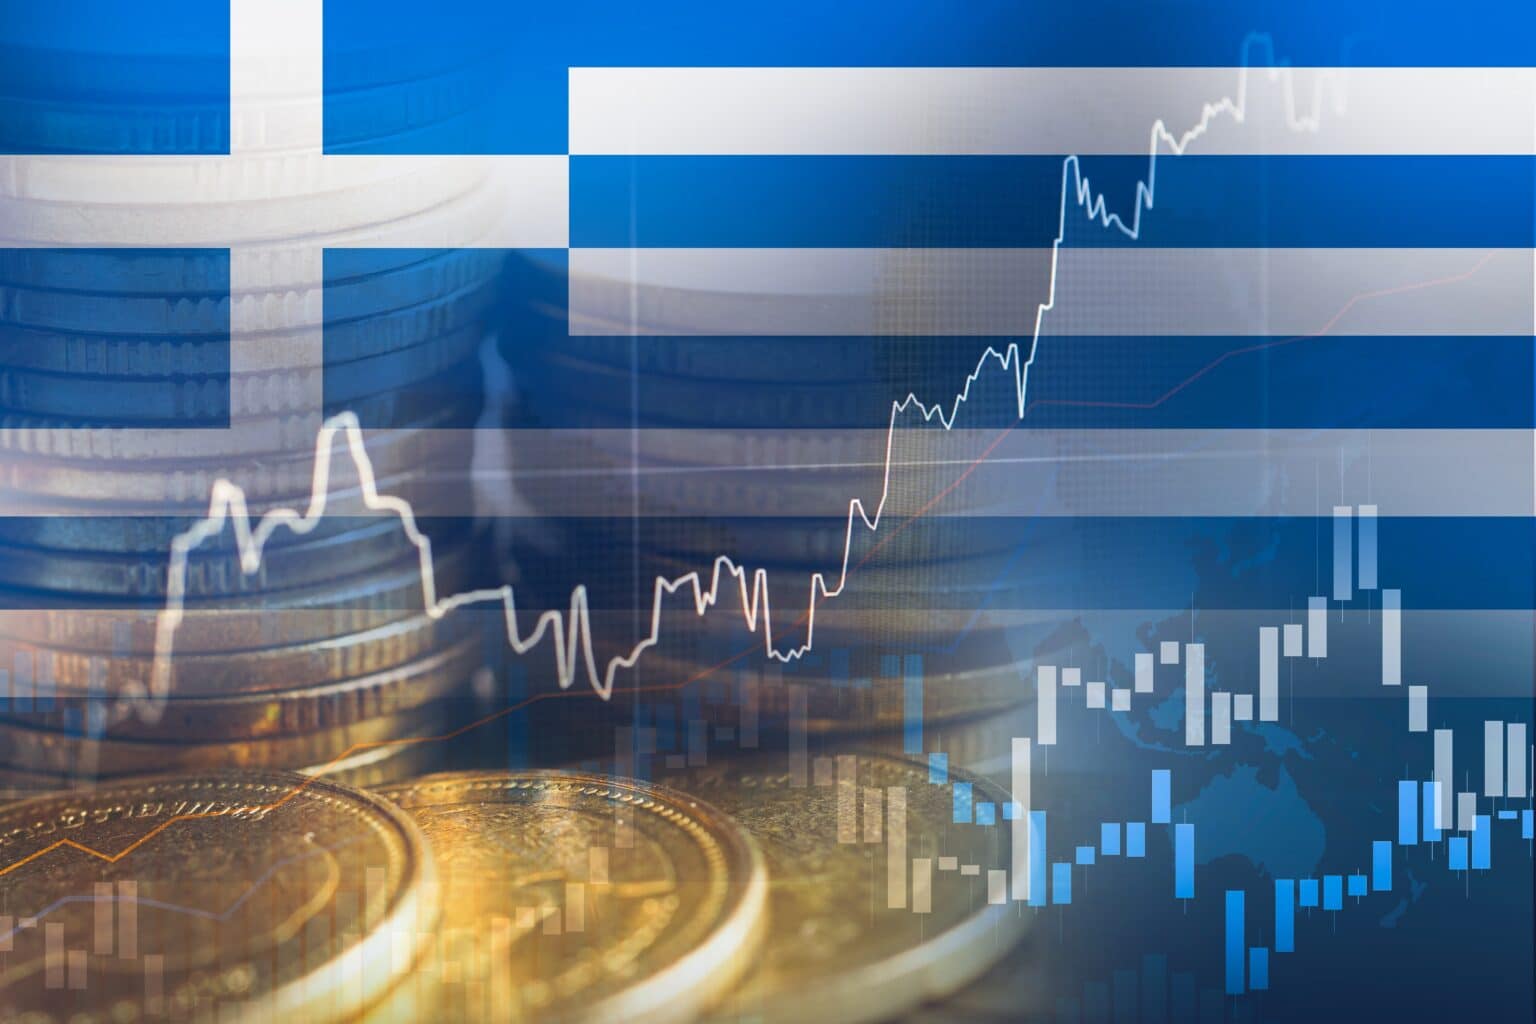 יוצאת מהמשבר: יוון מתכננת פירעון מוקדם מהצפוי של הלוואות בשווי 8 מיליארד יורו